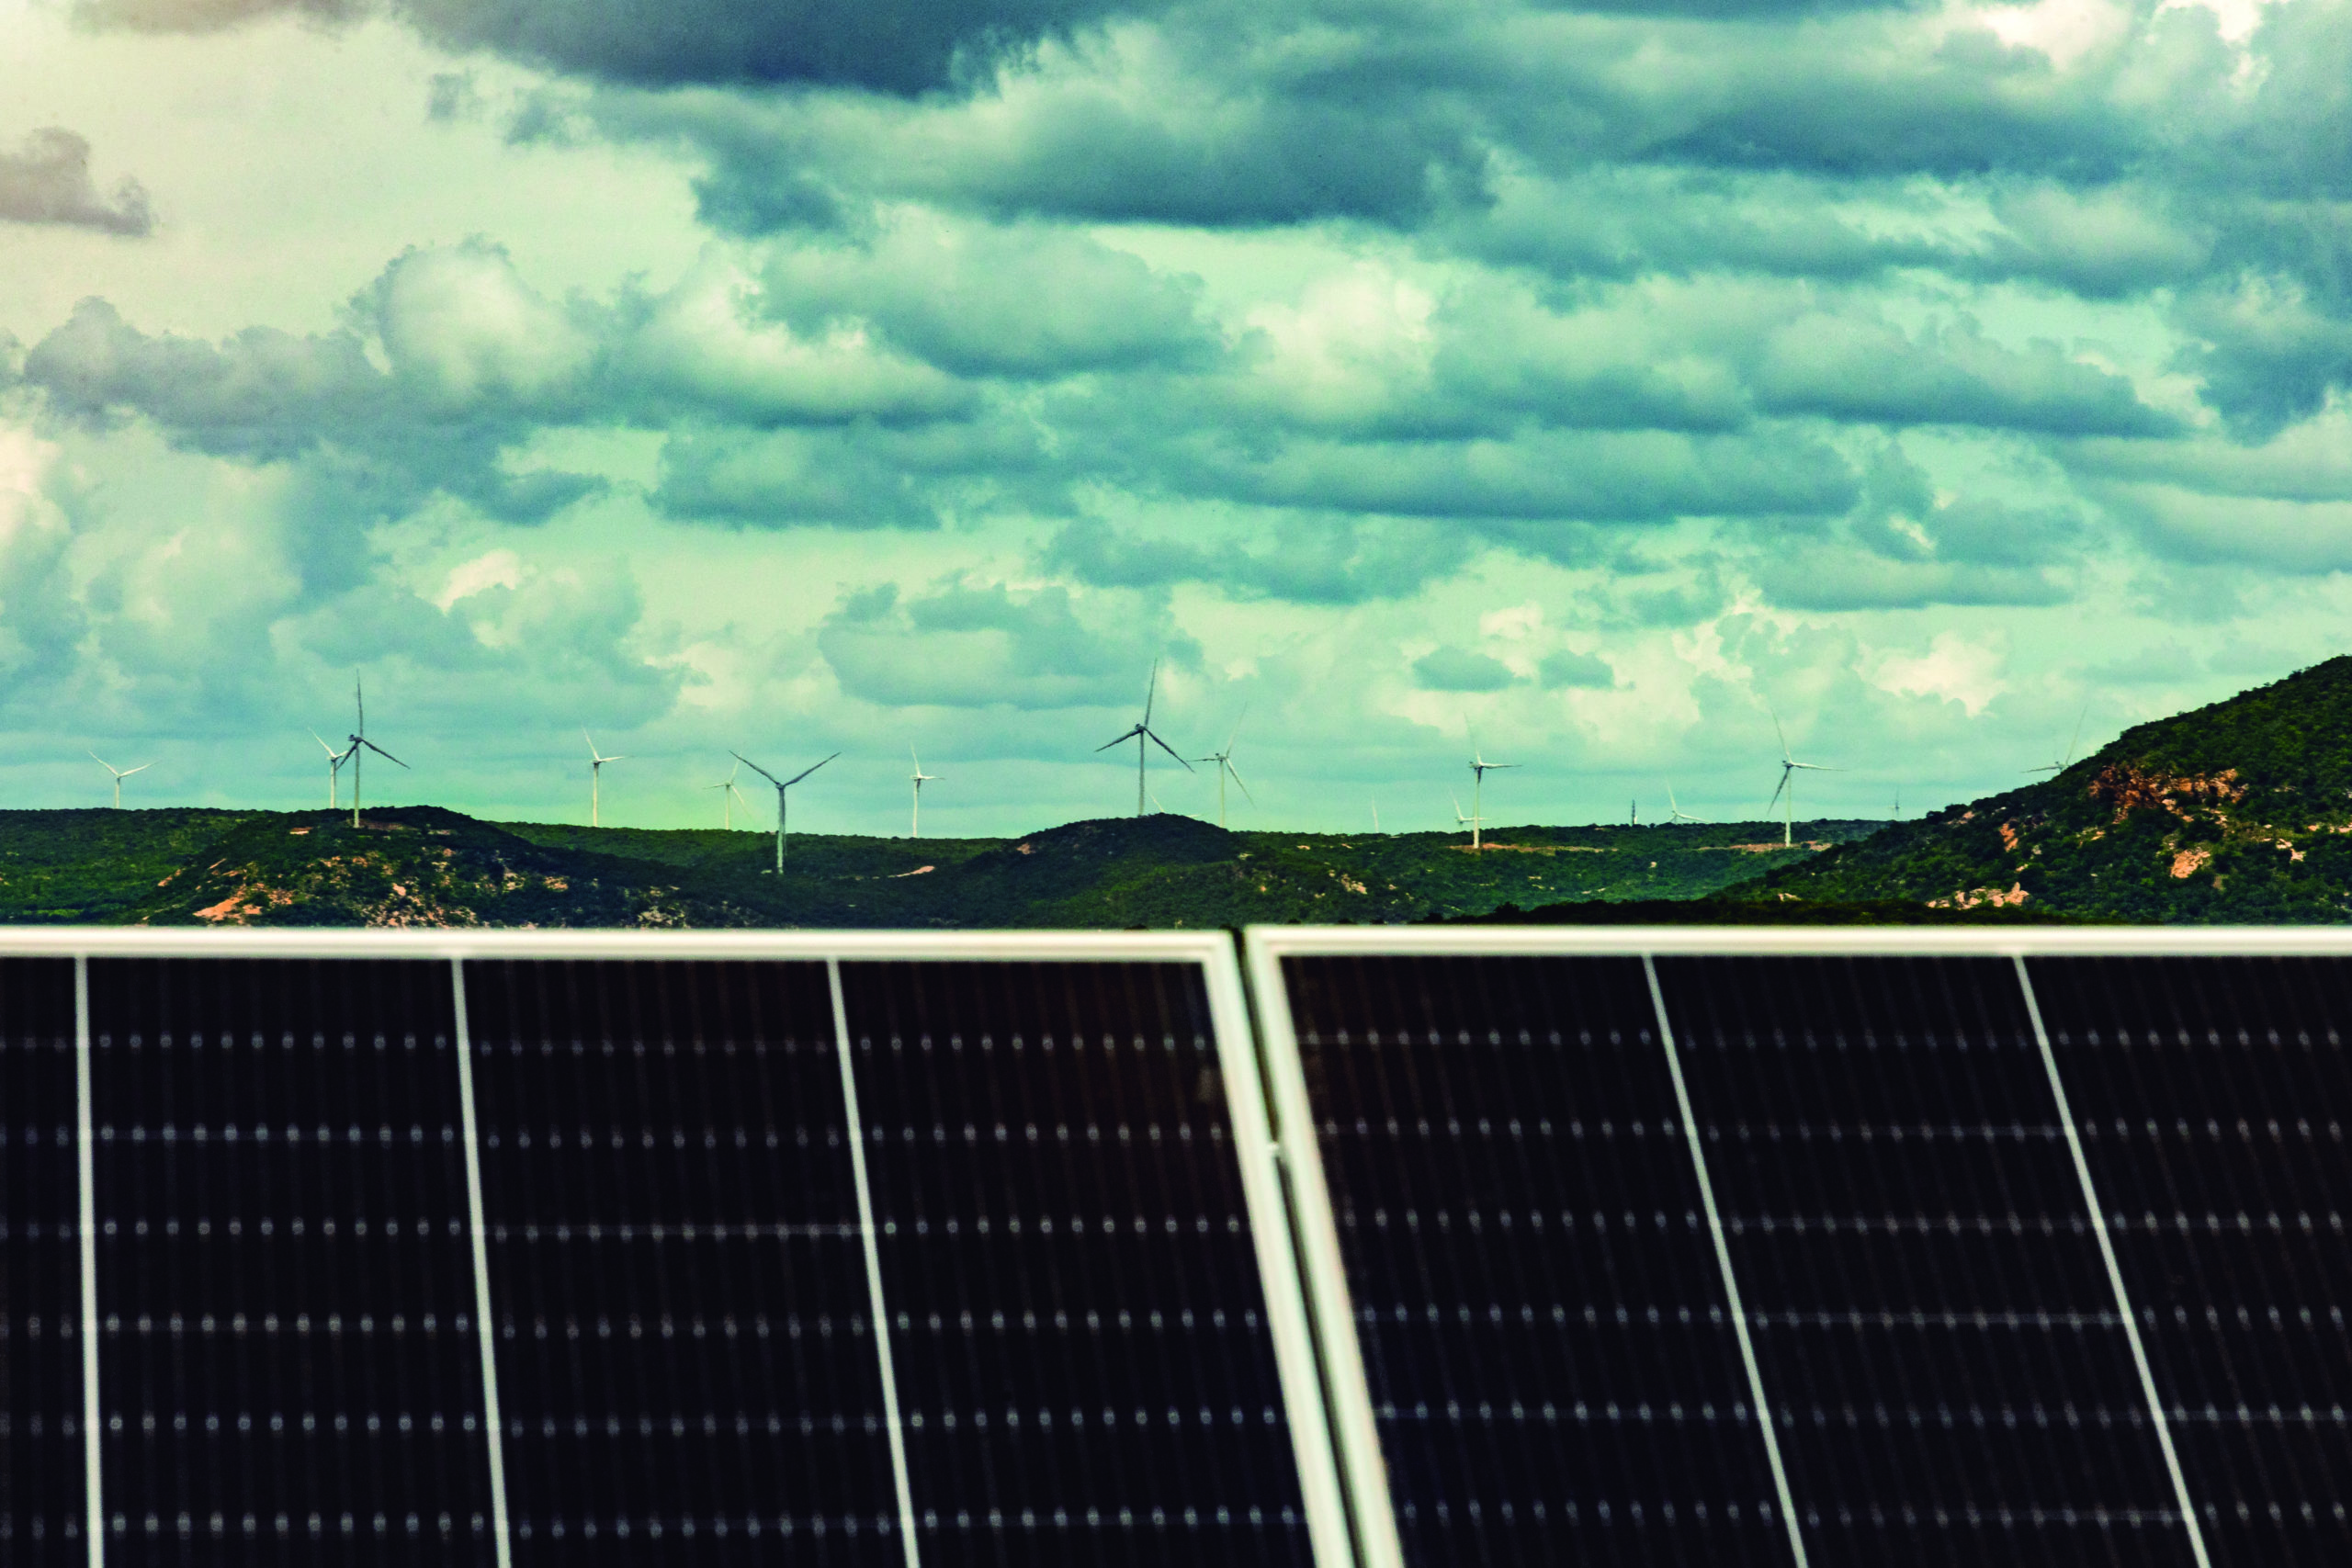 Solar atinge 23,9 GW e sobre para 2º lugar em potência no Brasil. Na imagem: Placas fotovoltaicas instaladas e, ao fundo, aerogeradores (Foto: Divulgação/Neoenergia)